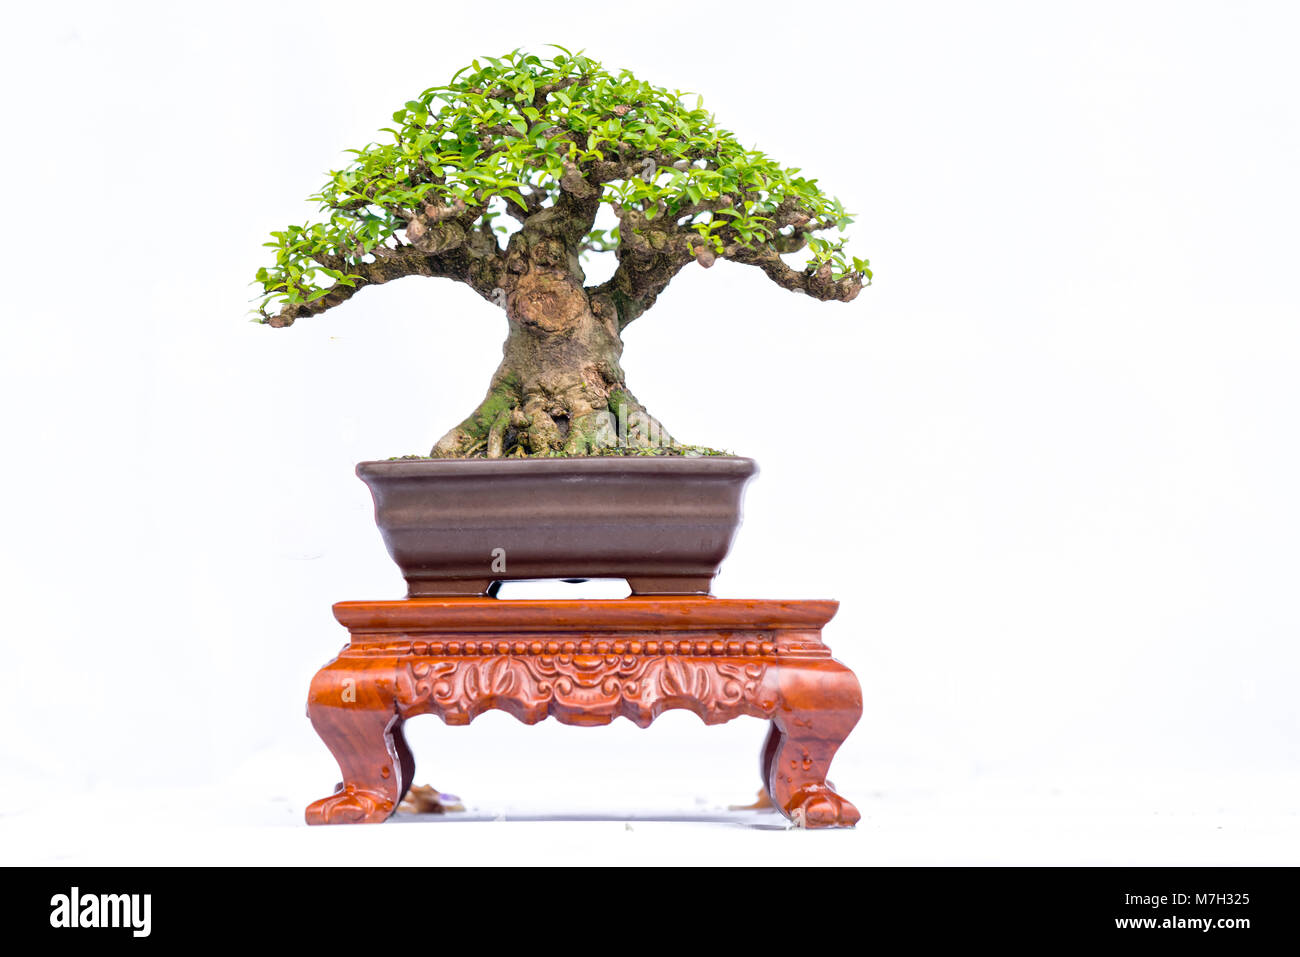 Viejo verde bonsai aislado sobre fondo blanco en una maceta en la forma del tallo se forma artesanos crear hermosas obras de arte en la naturaleza. Foto de stock